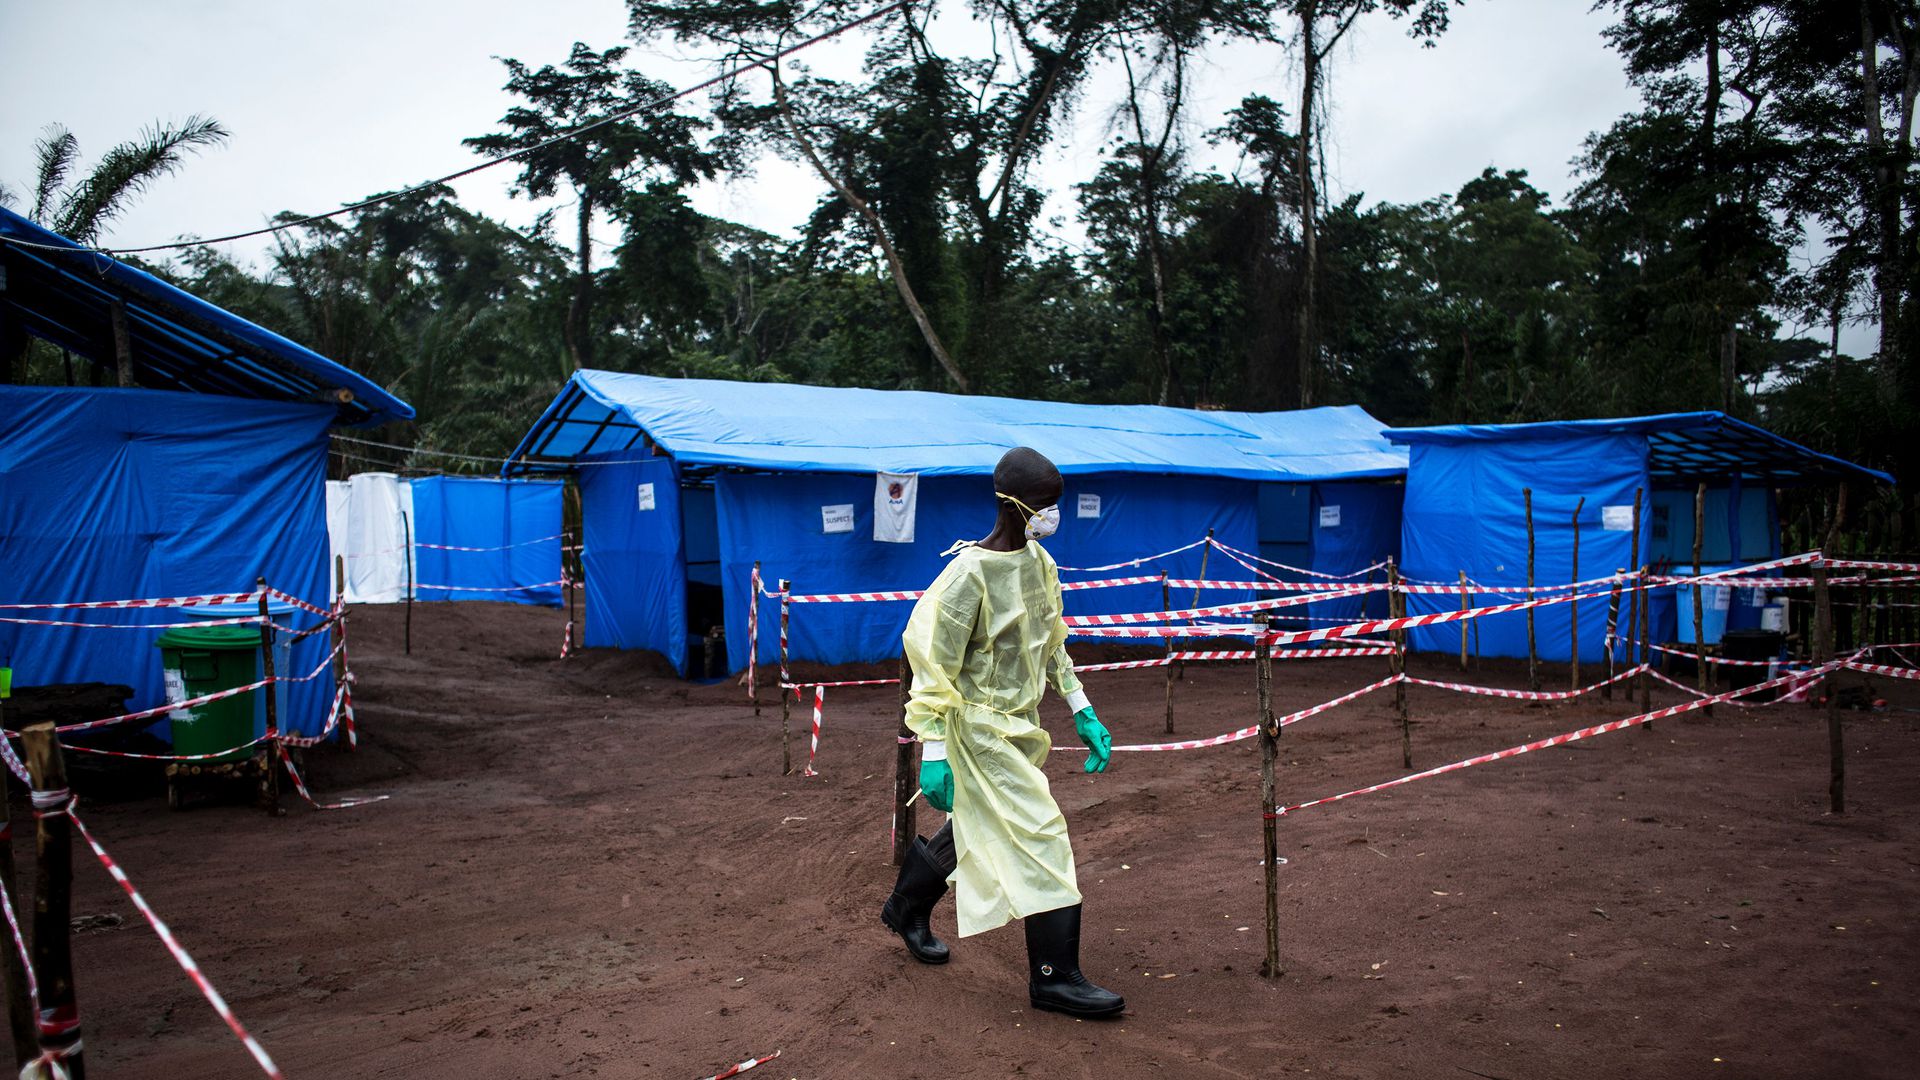 الصحة العالمية تحذر من انتقال "إيبولا" من الكونغو إلى الدول المجاورة لها